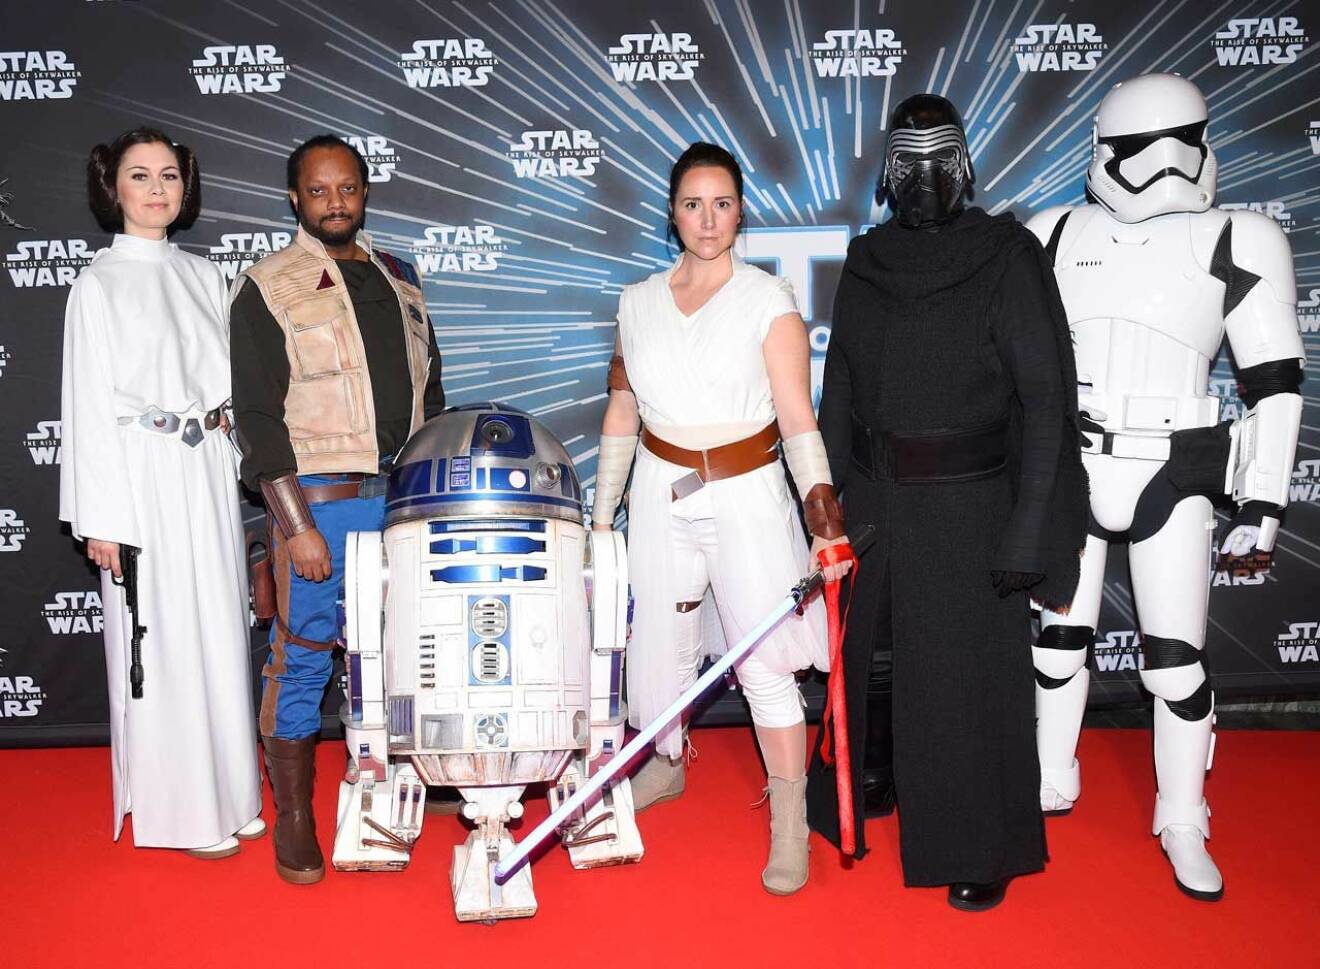 May the force be with you! 1977 skrev George Lucas första filmen och filmfigurerna har minst sagt blivit ikoner för alla Star Wars-fans världen över.